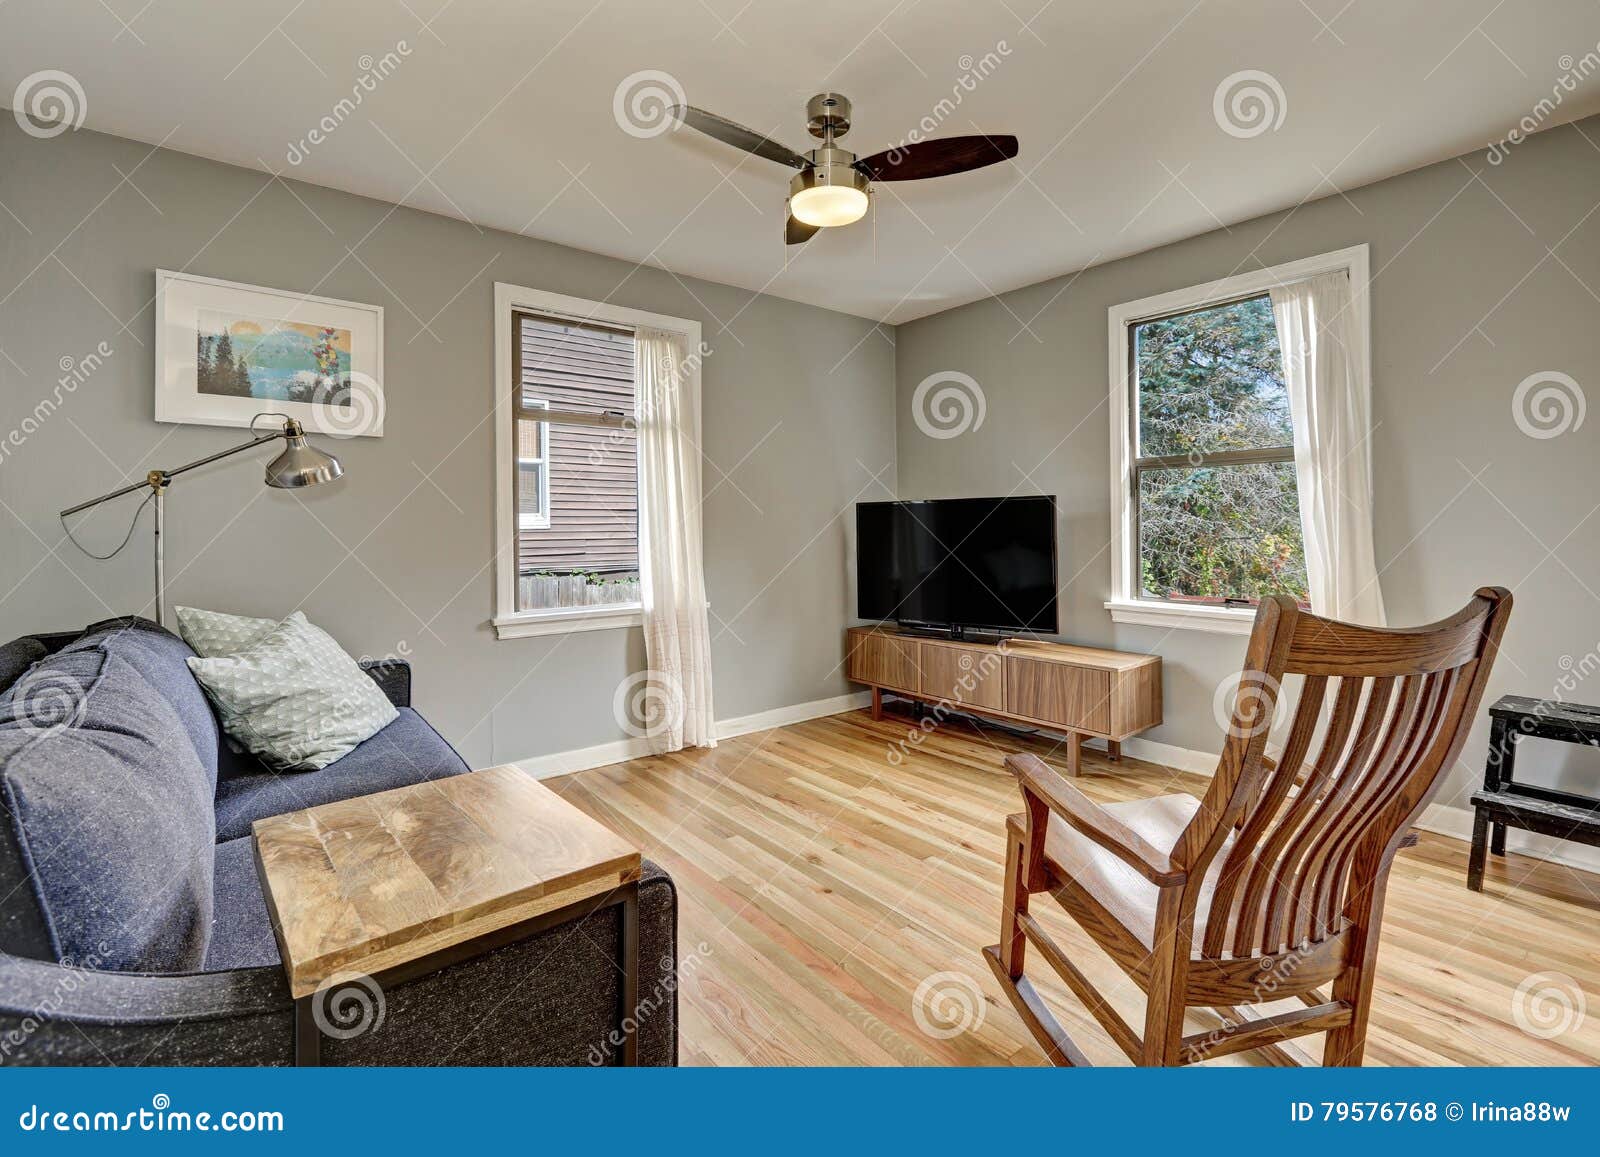 Simplistic Living Room Interior With Light Hardwood Floors